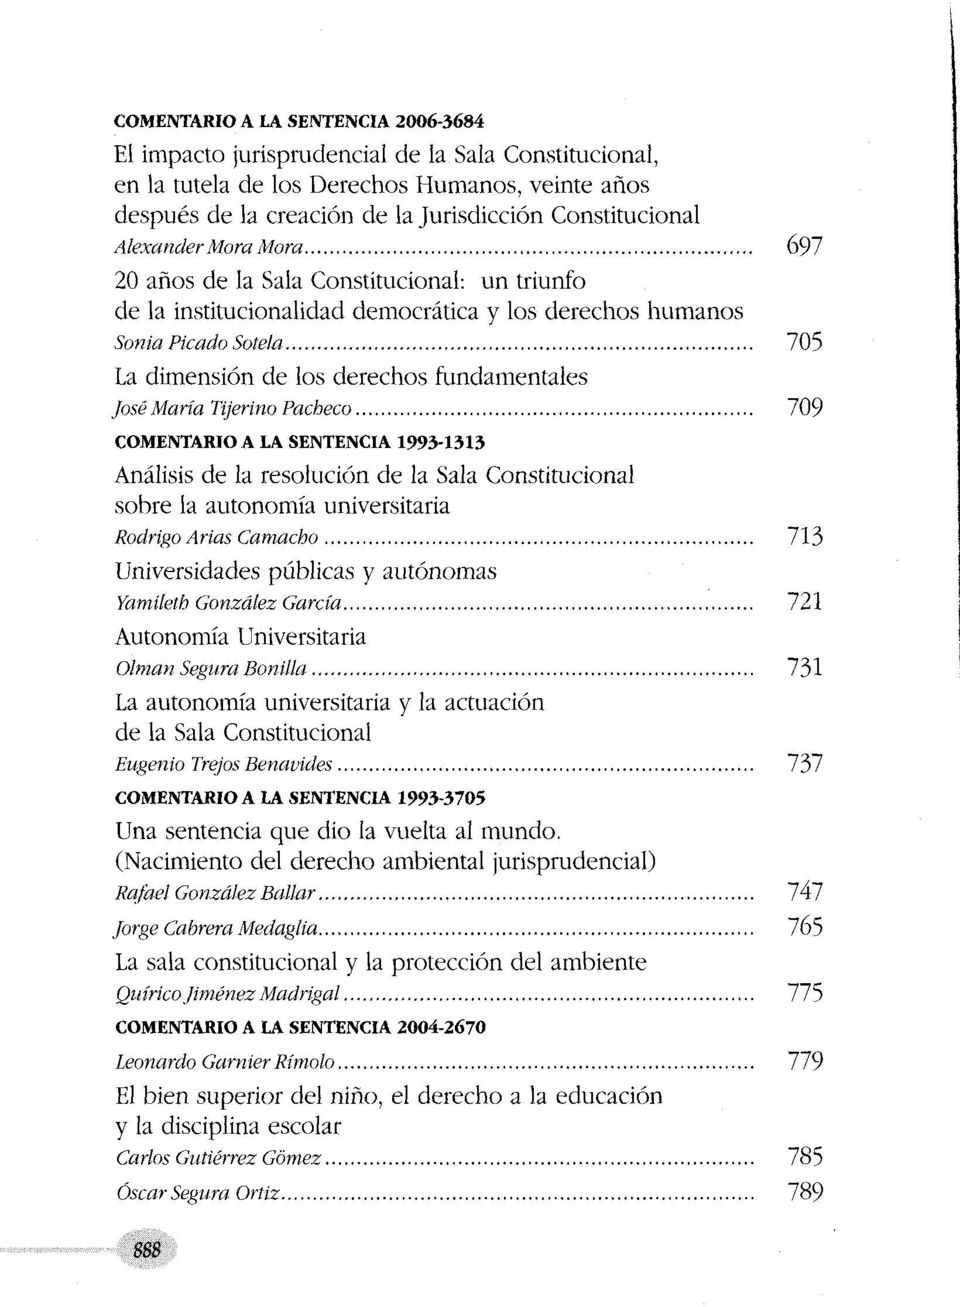 .. 705 La dimensión de los derechos fundamentales José María Tijerino Pacheco.